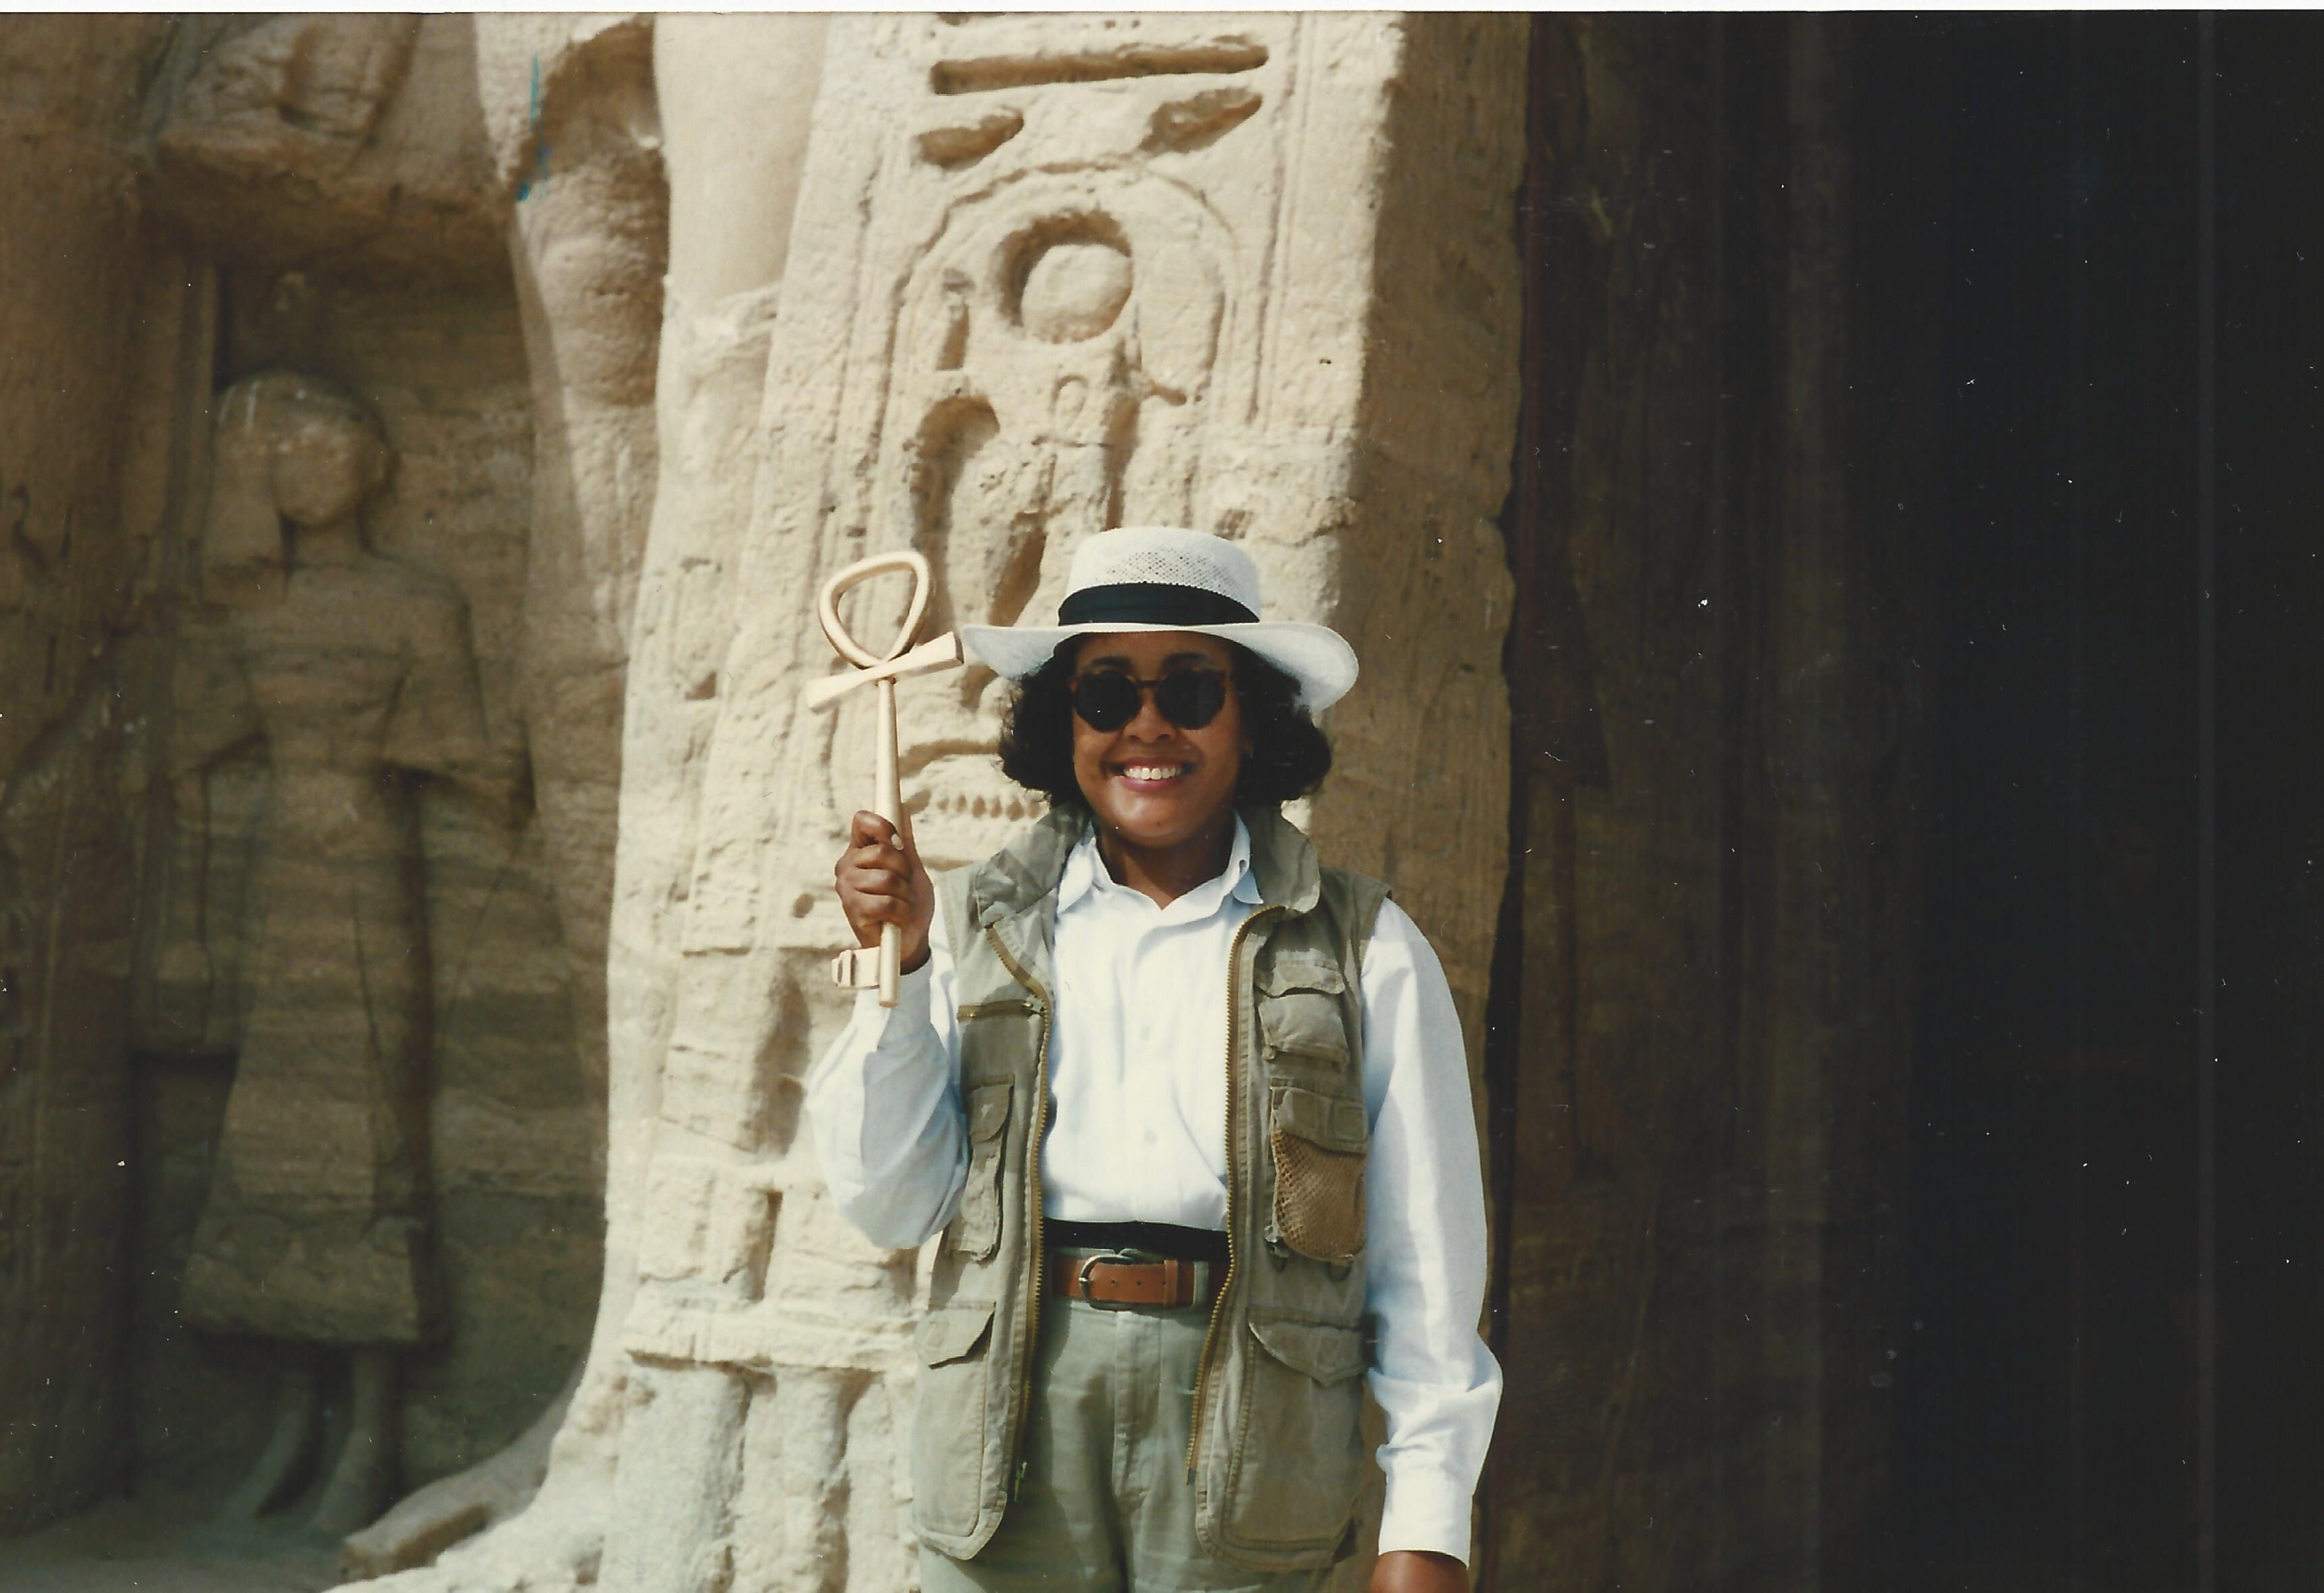 Gail Campbell Woolley in Egitto, 1996. Tempio di Abu Simbel. Gail ha in mano un ankh o simbolo della "chiave della vita".